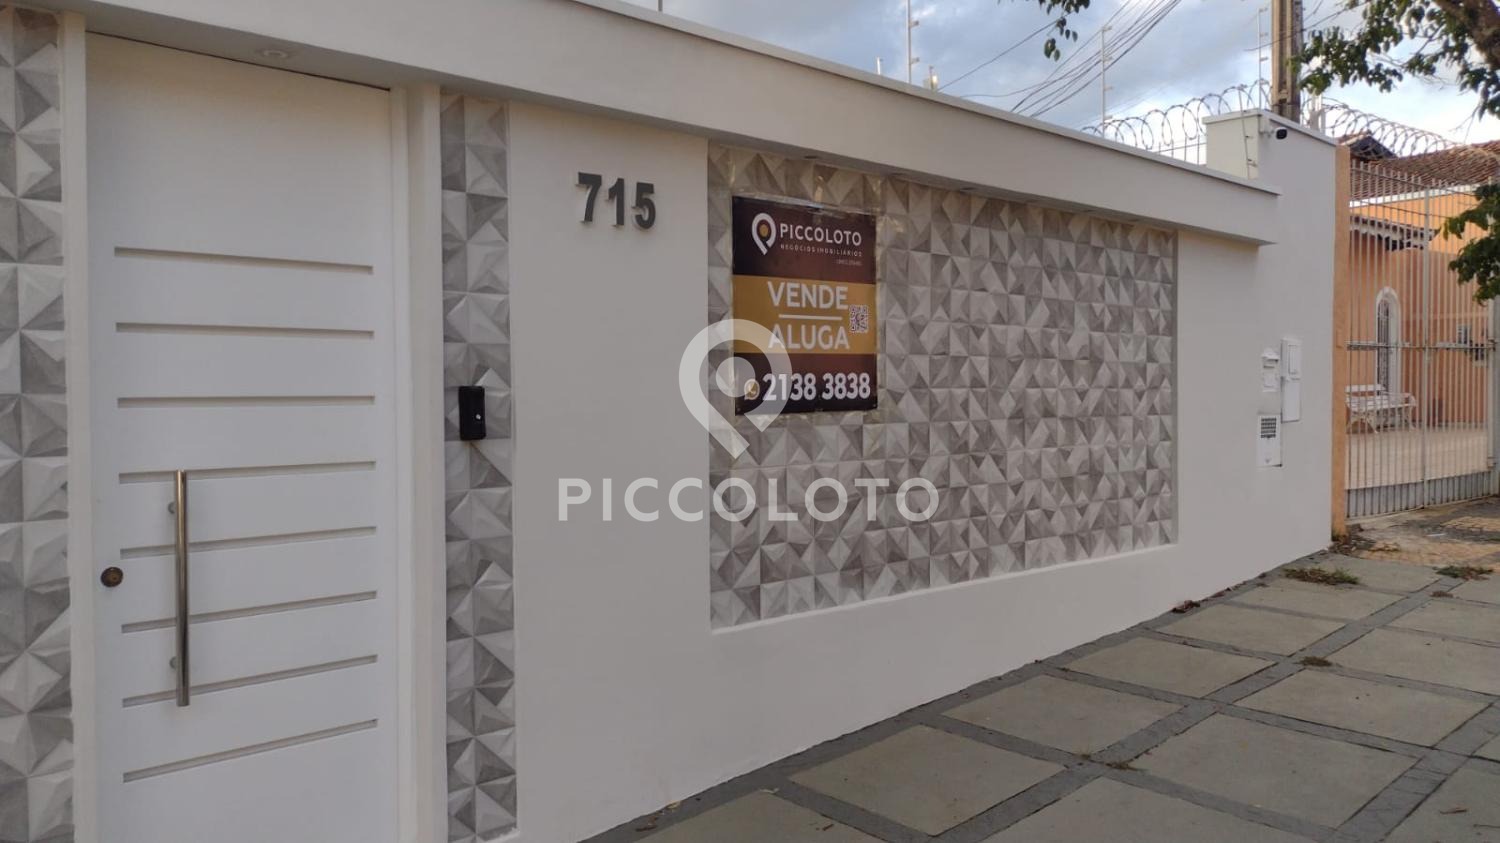 Piccoloto -Casa à venda no Chacara da Barra em Campinas